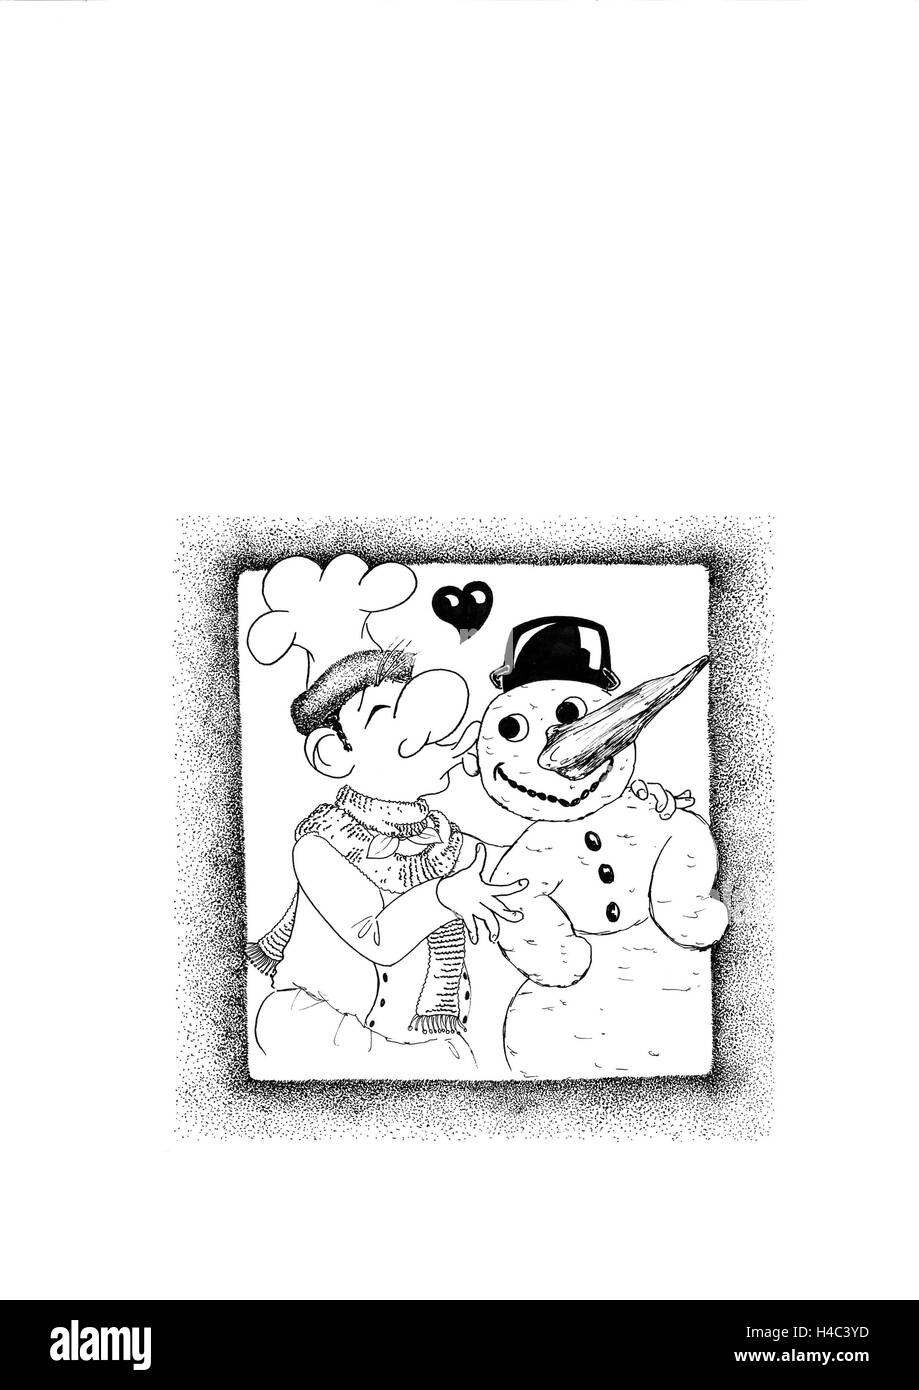 Cook y el muñeco de nieve en íntima comunión Foto de stock